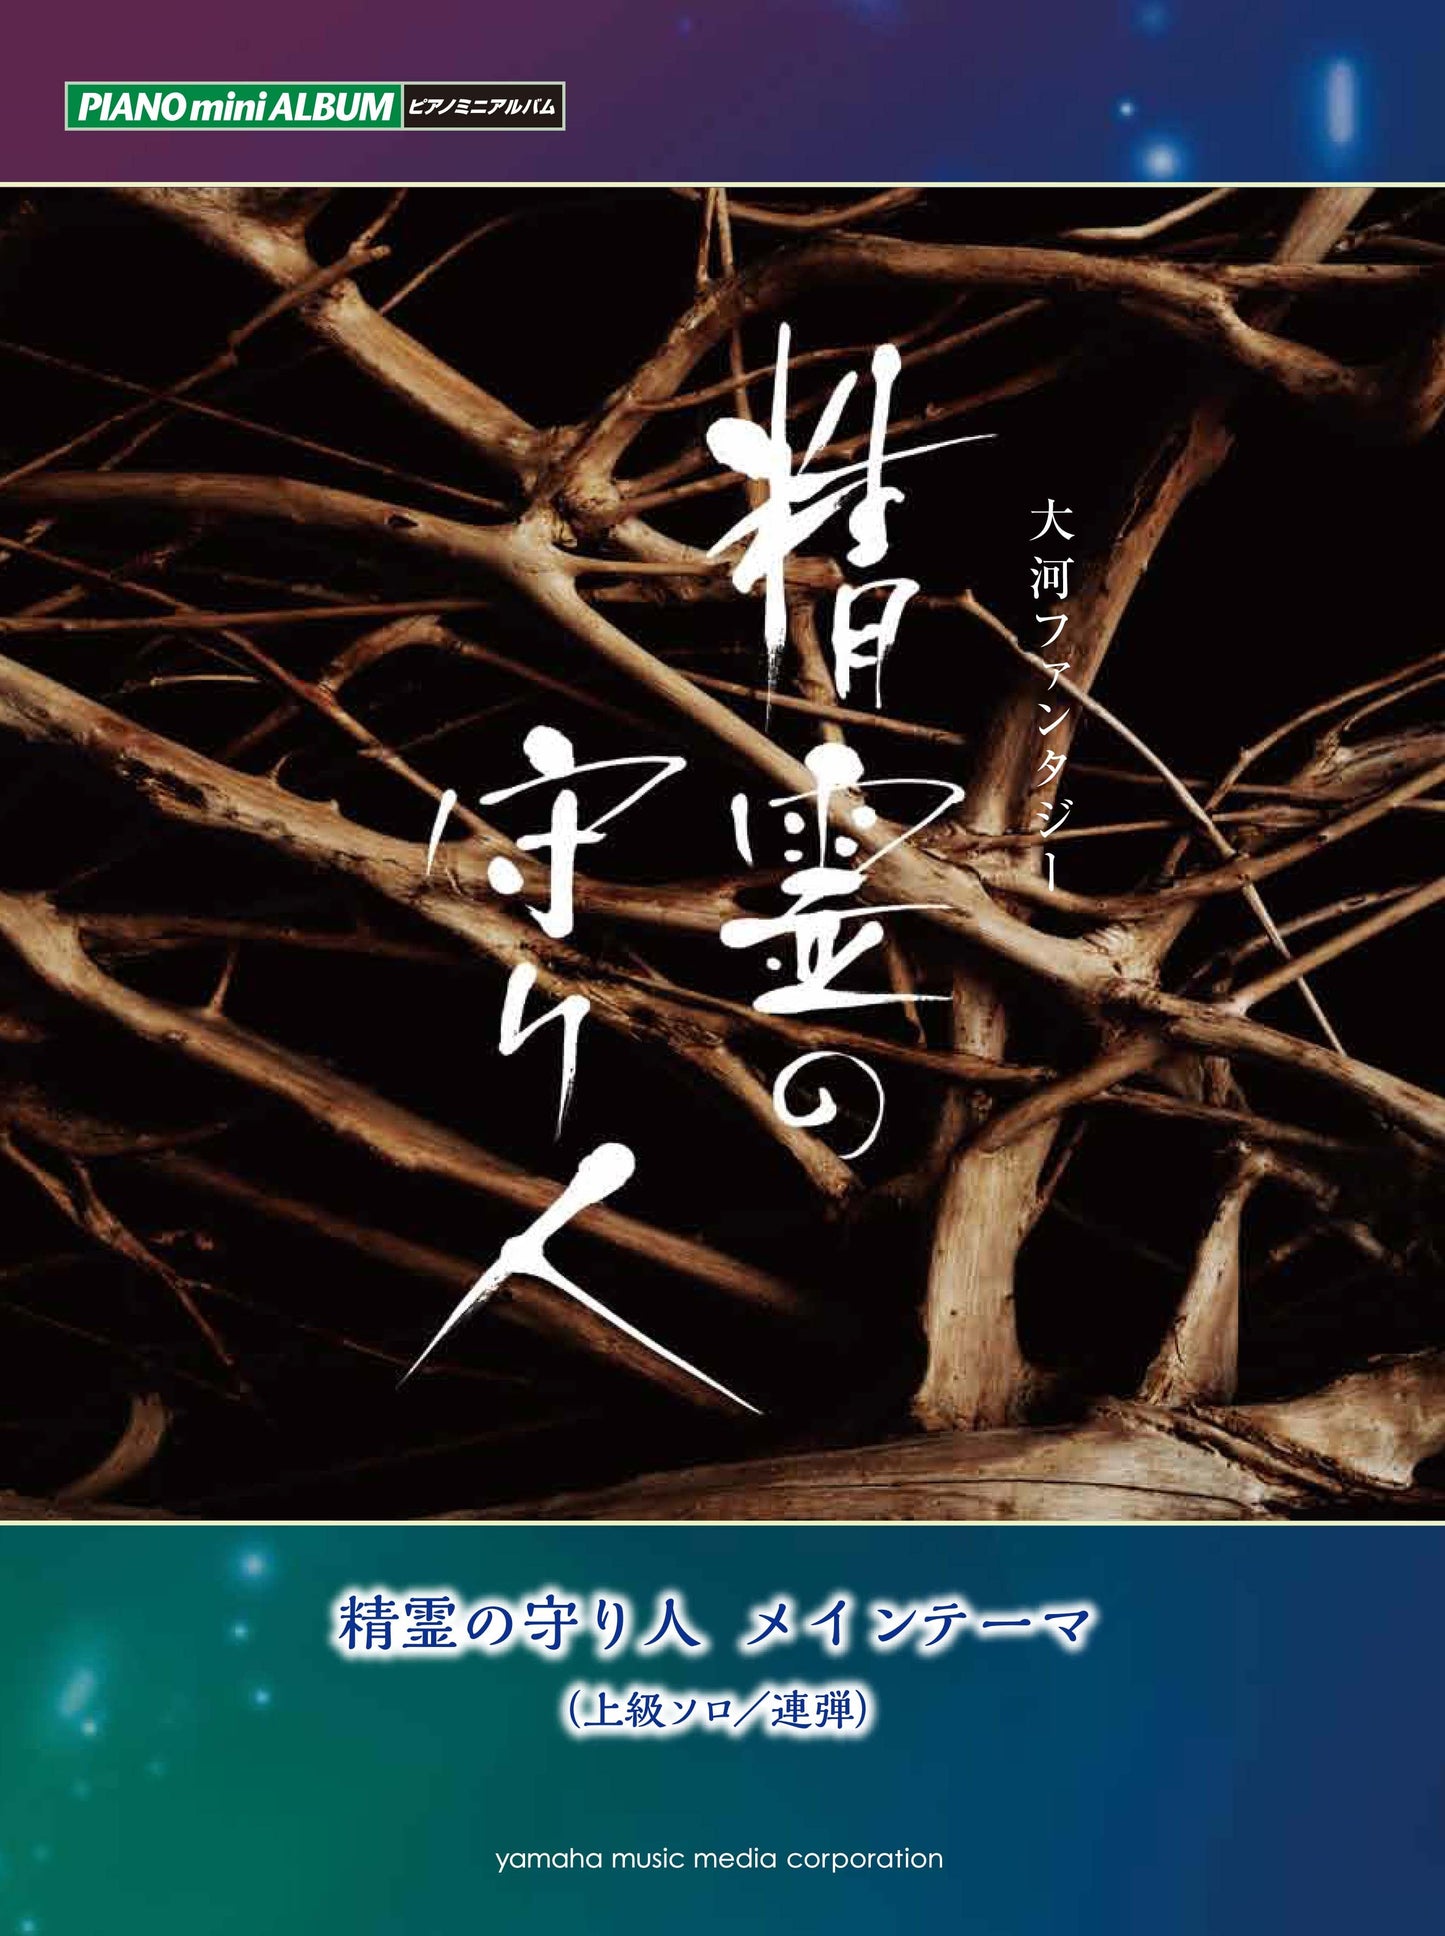 ピアノミニアルバム NHK大河ファンタジー「精霊の守り人」 メインテーマ